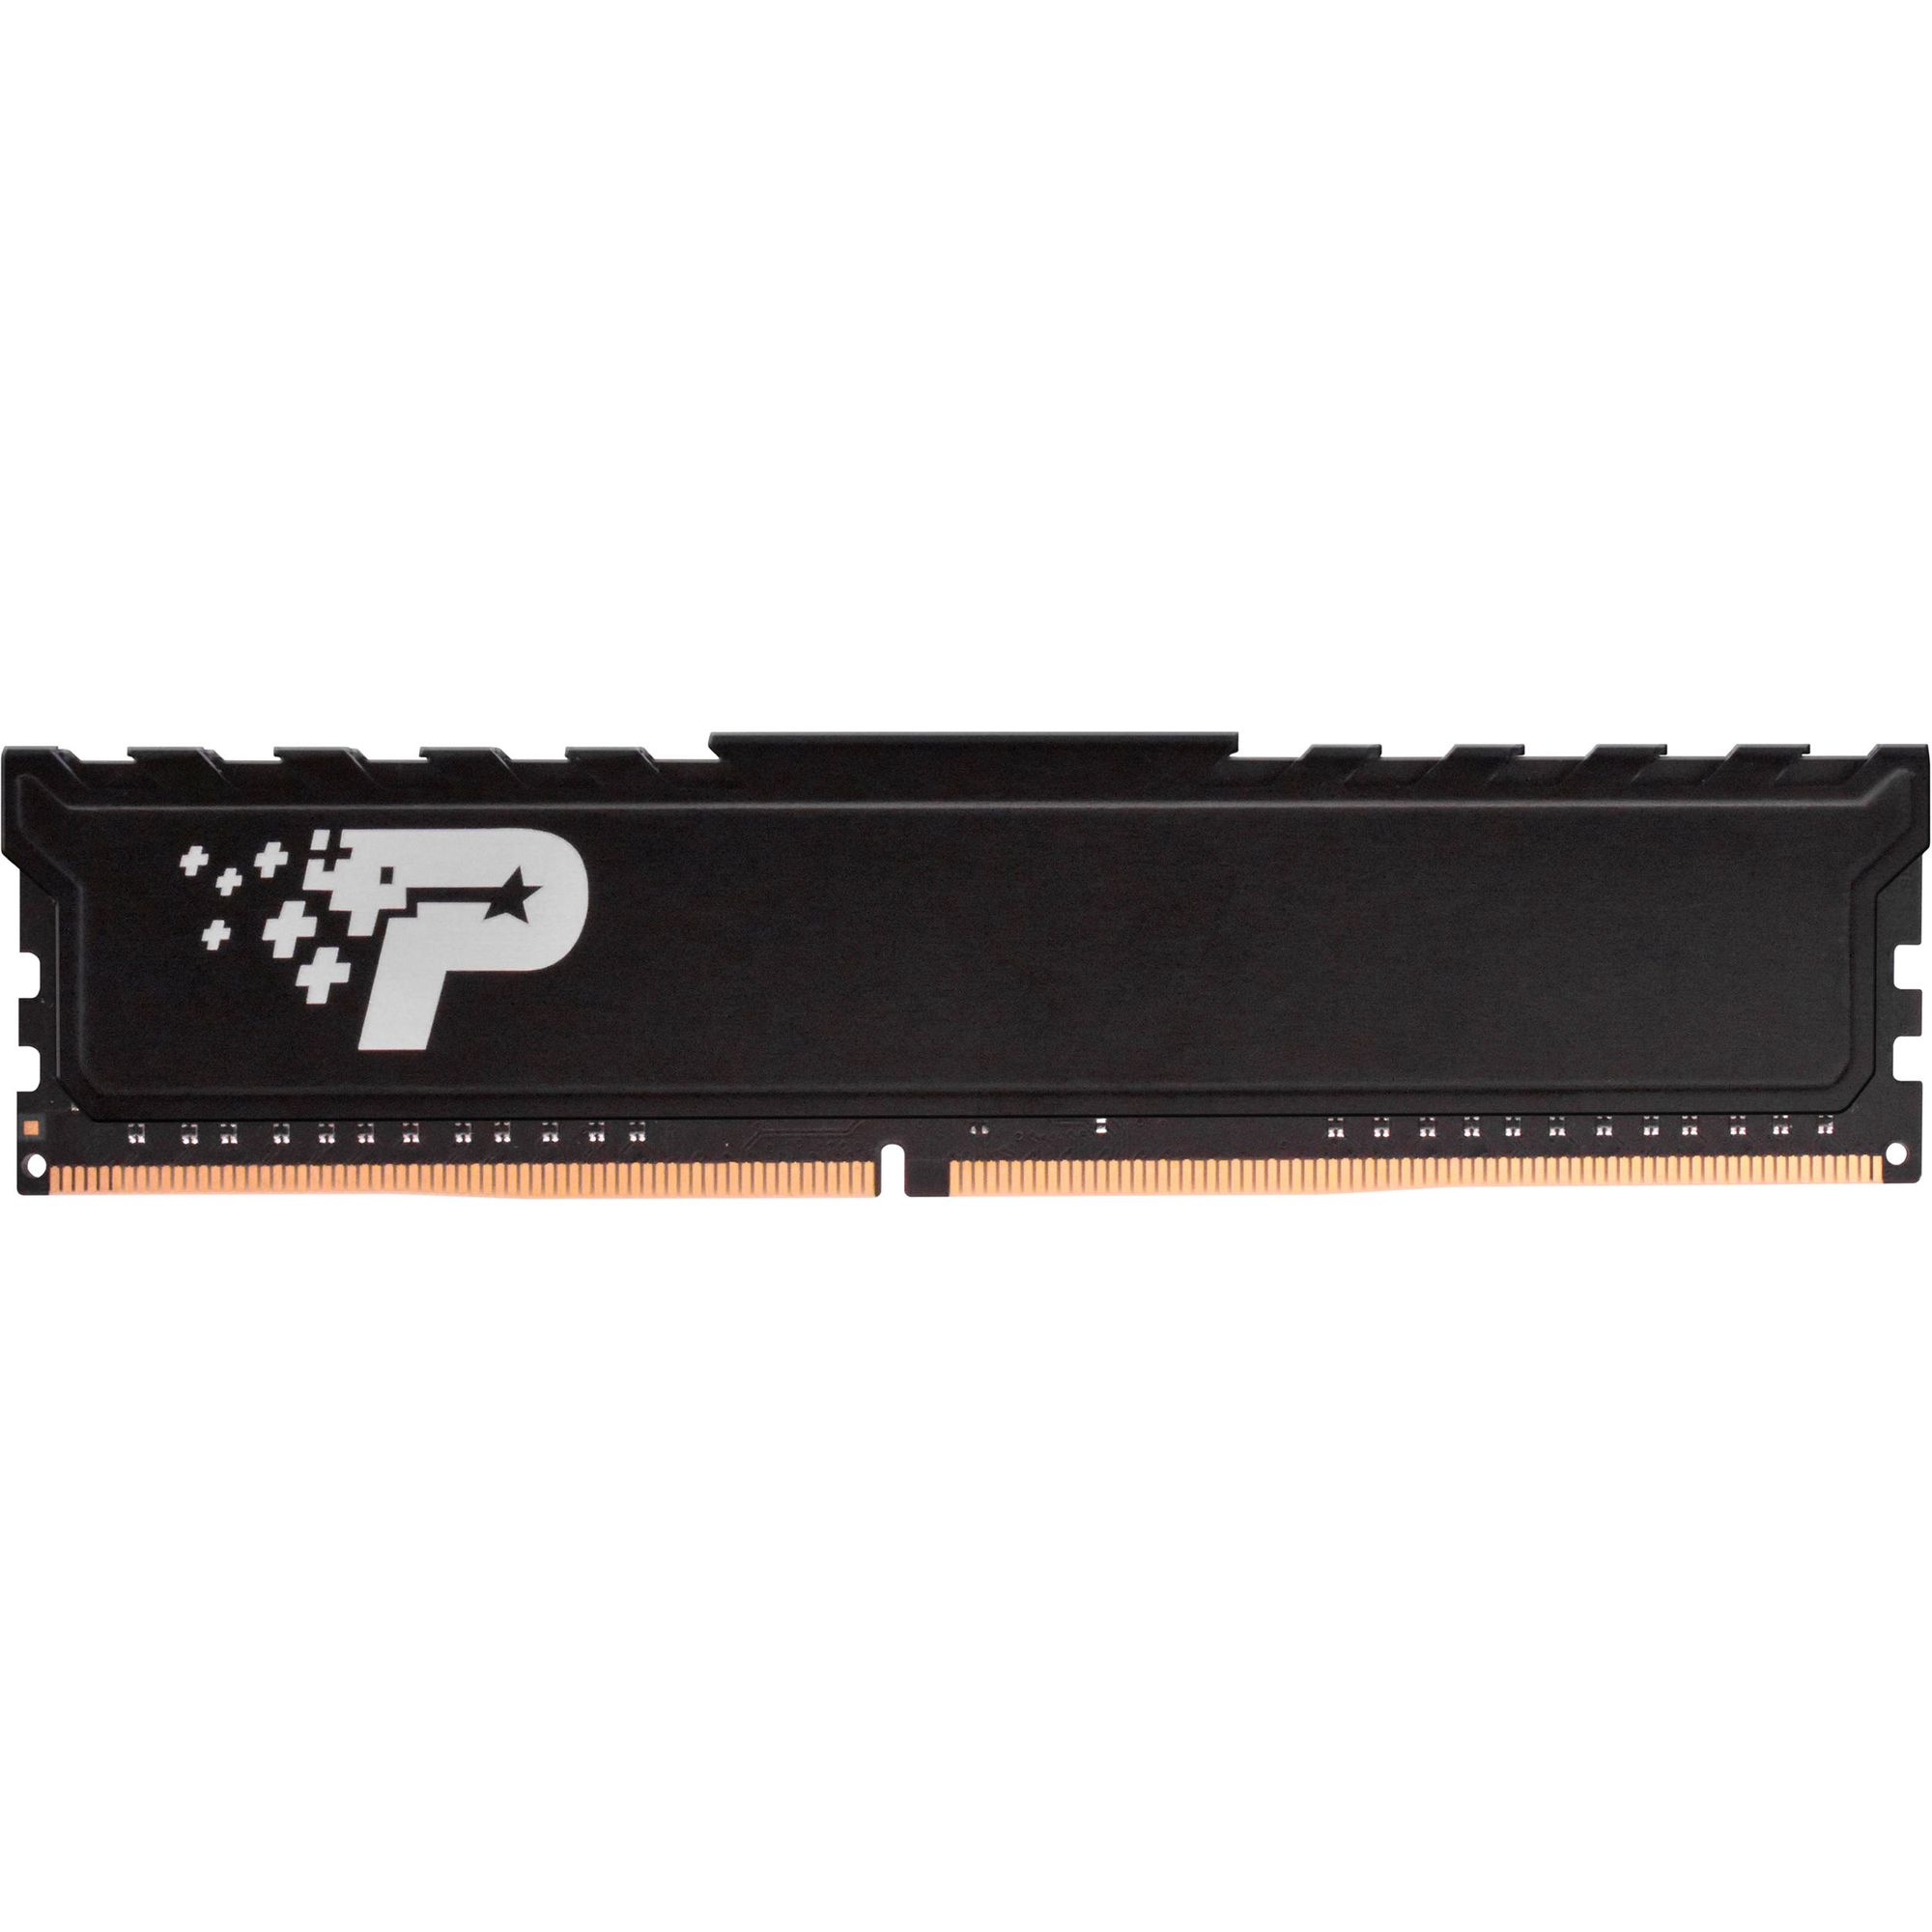 Память оперативная DDR4 Patriot Memory SL Premium 16Gb 2666MHz (PSP416G26662H1) память оперативная ddr4 patriot 16gb 2666mhz psd416g266681